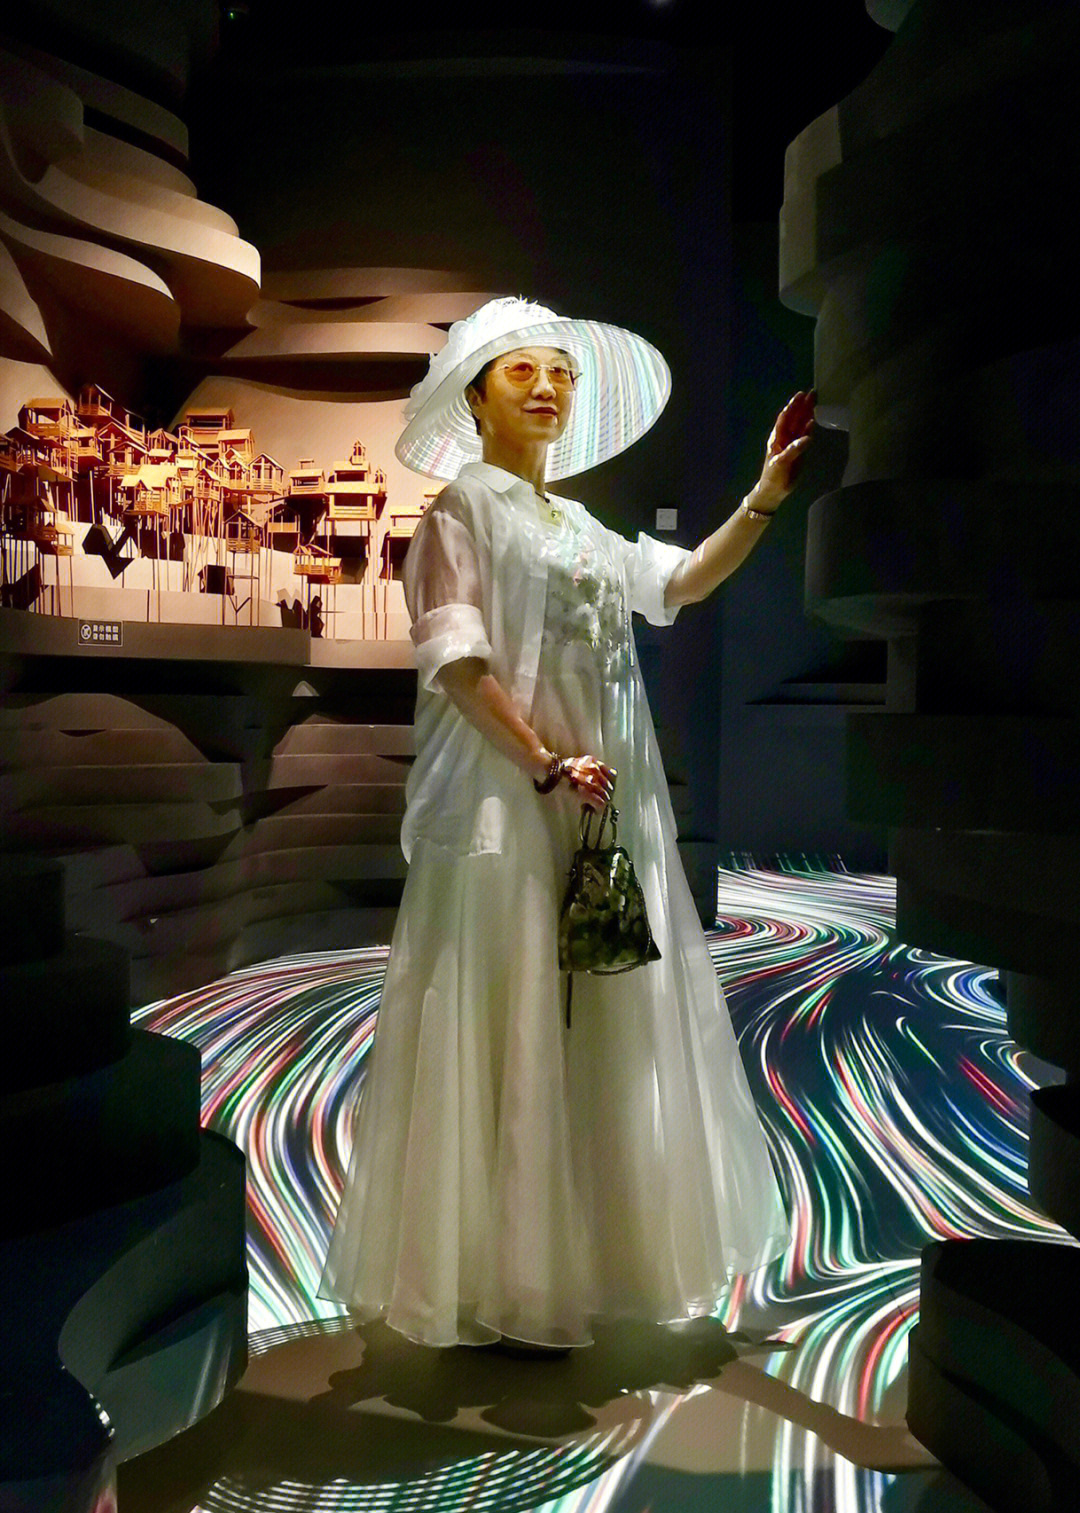 重庆游玩  今天参观重庆规划展览馆,特意着装一身白,因着馆内逆光源